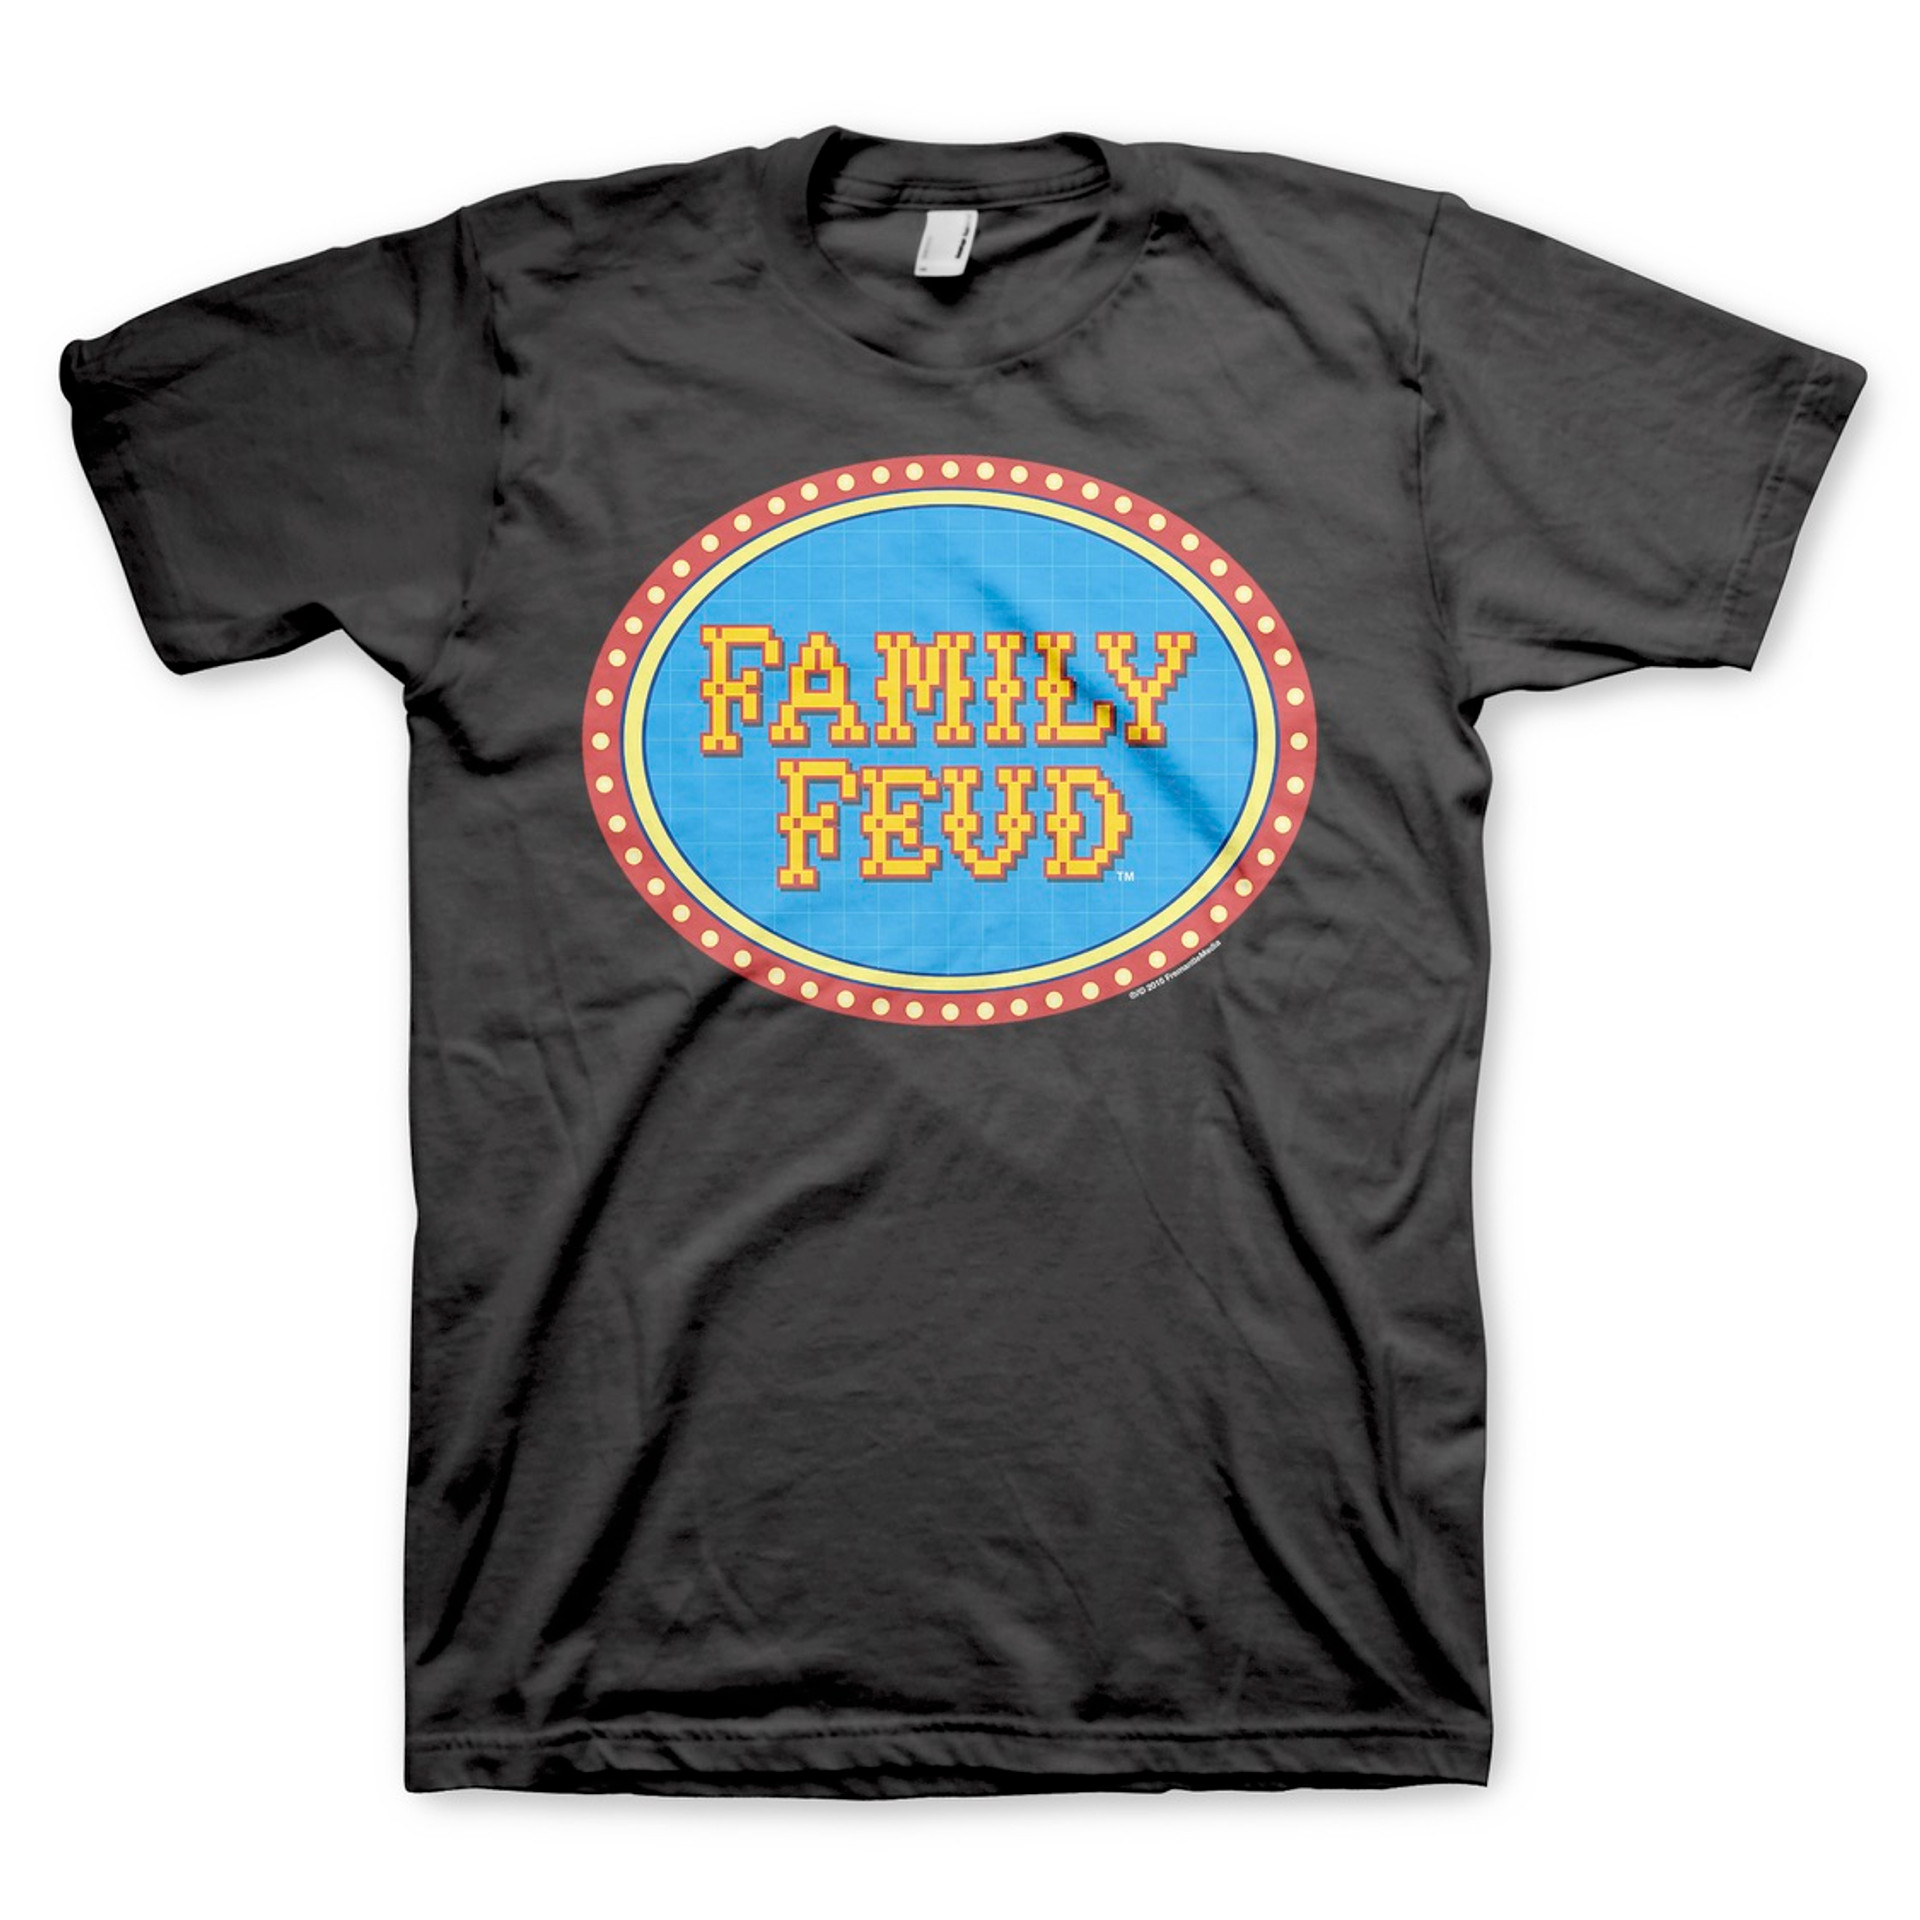 family feud old logo t shirt 5661 crnzq